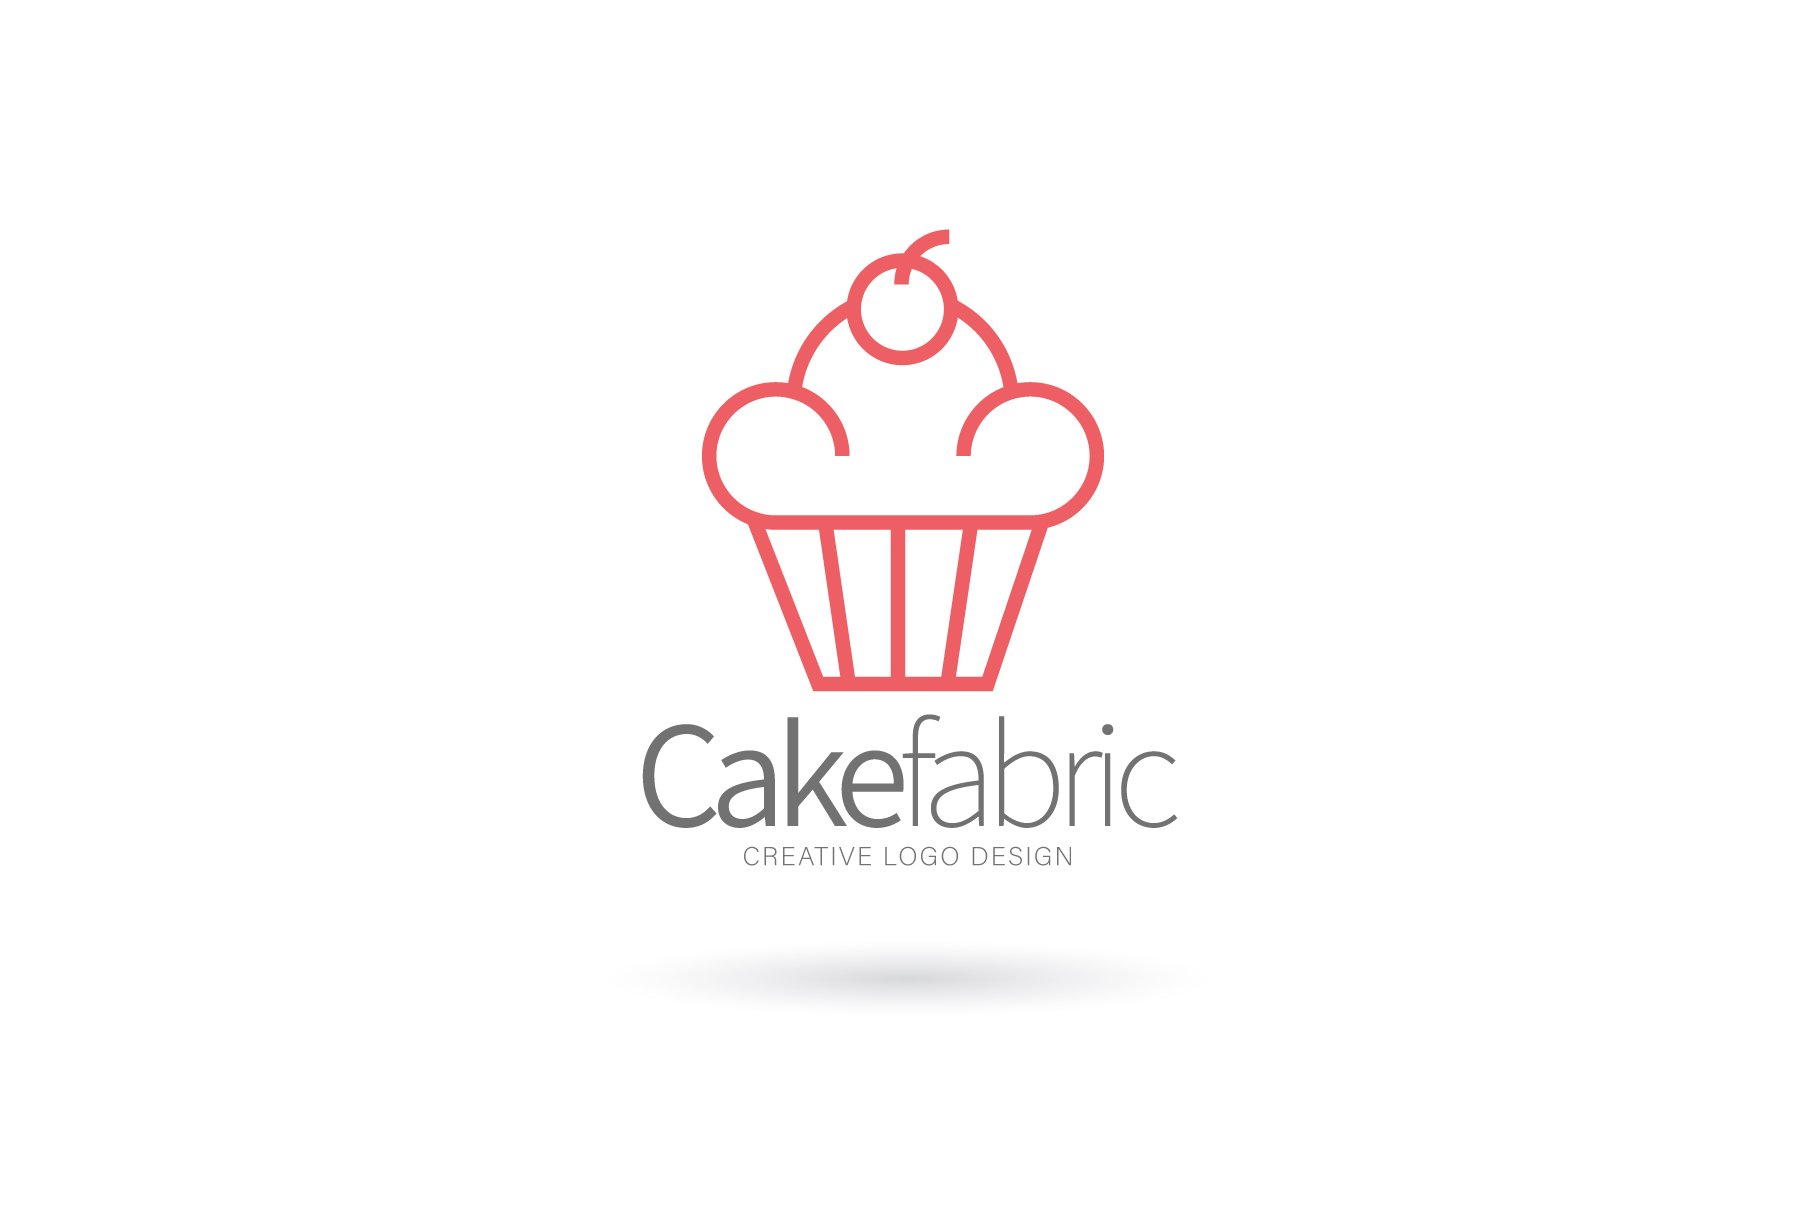 Cake logo, Bakery logo cover image.